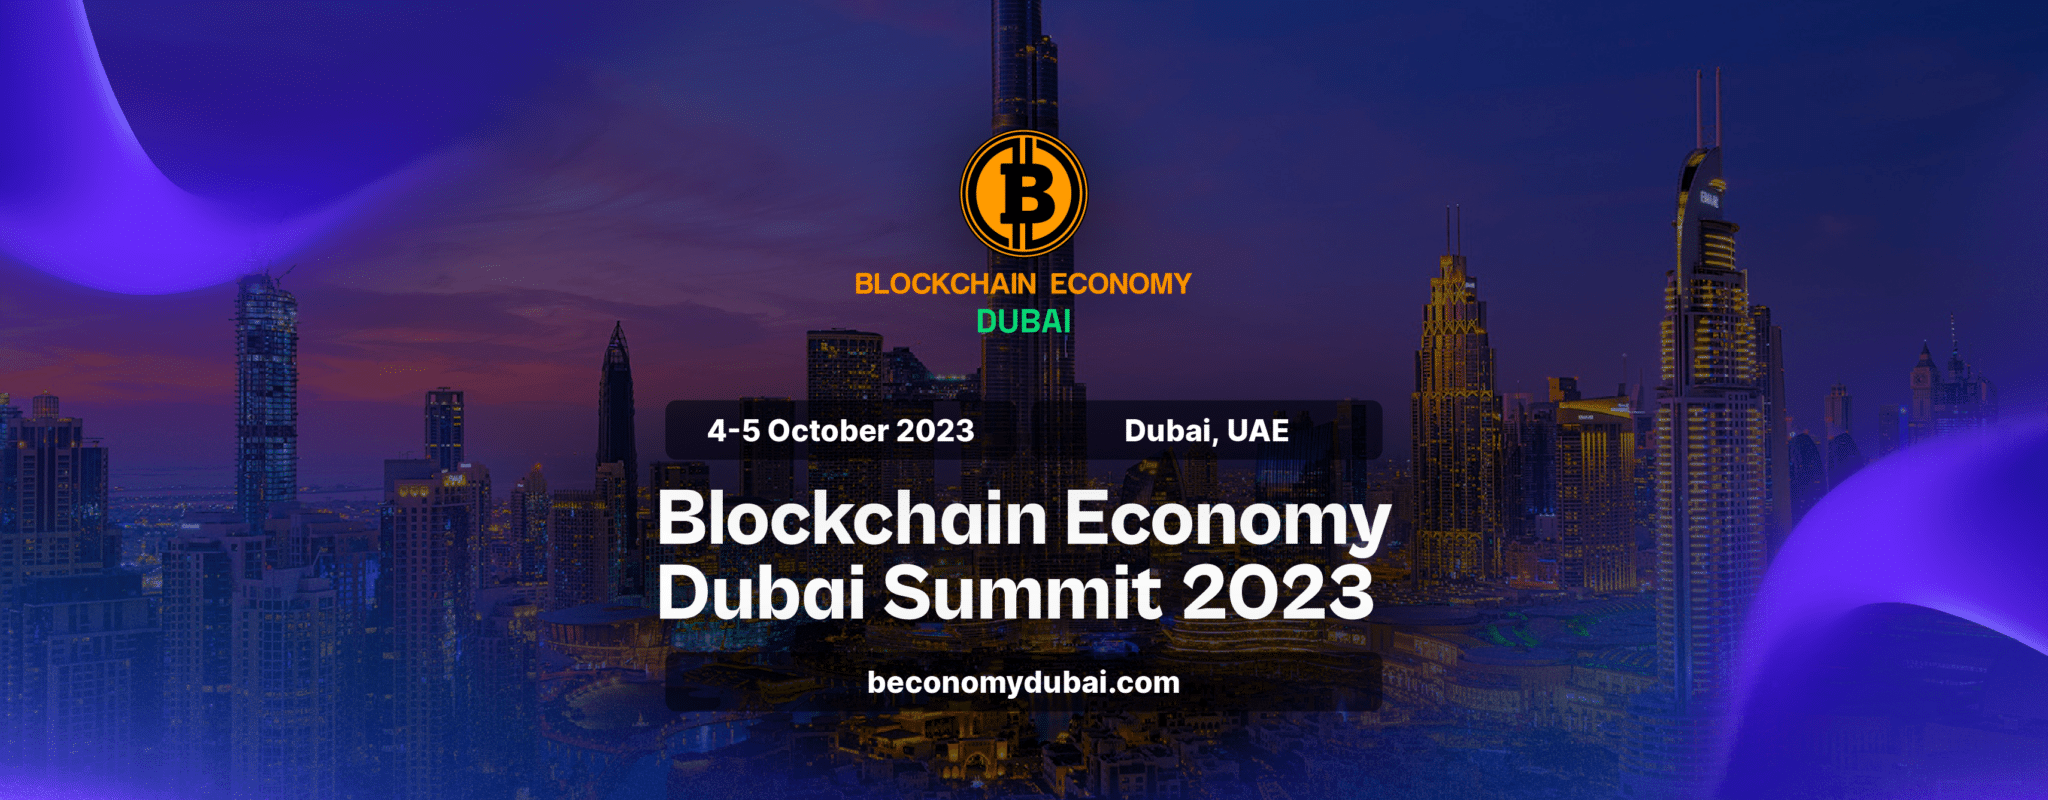 انجمن جهانی رمزارز در اجلاس اقتصاد بلاک چین دبی تشکیل می‌شود و رهبران صنعت را برای یک رویداد پیشگامانه در 4 تا 5 اکتبر 2023 متحد می‌کند.